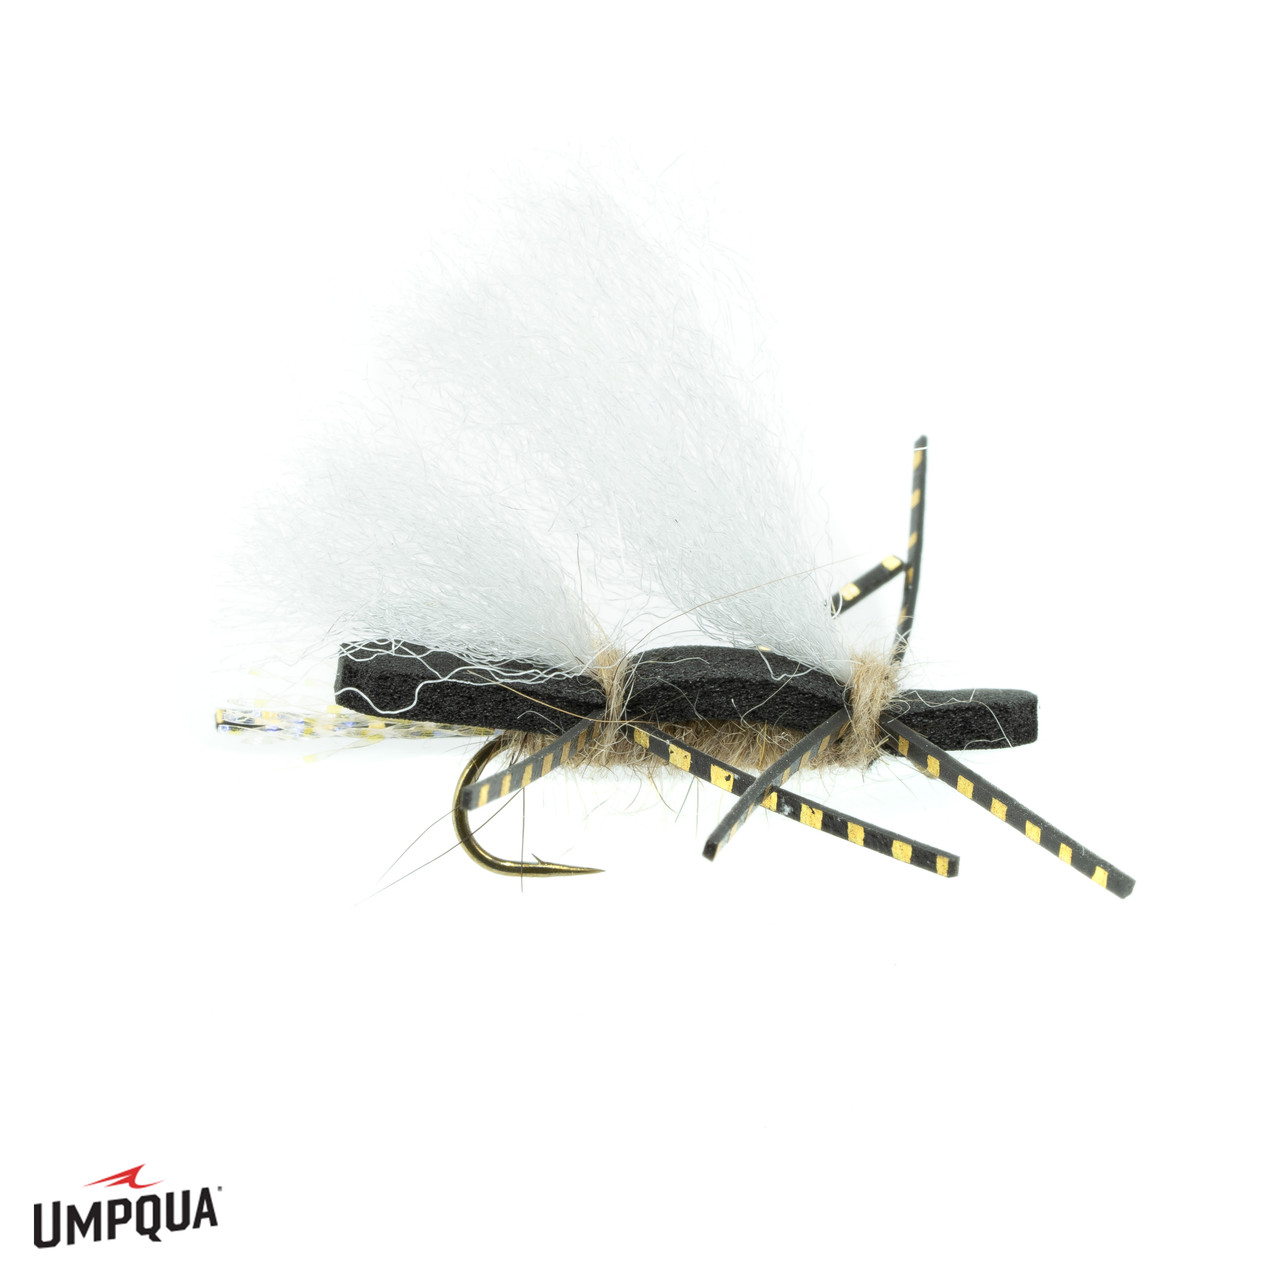 umpqua flies